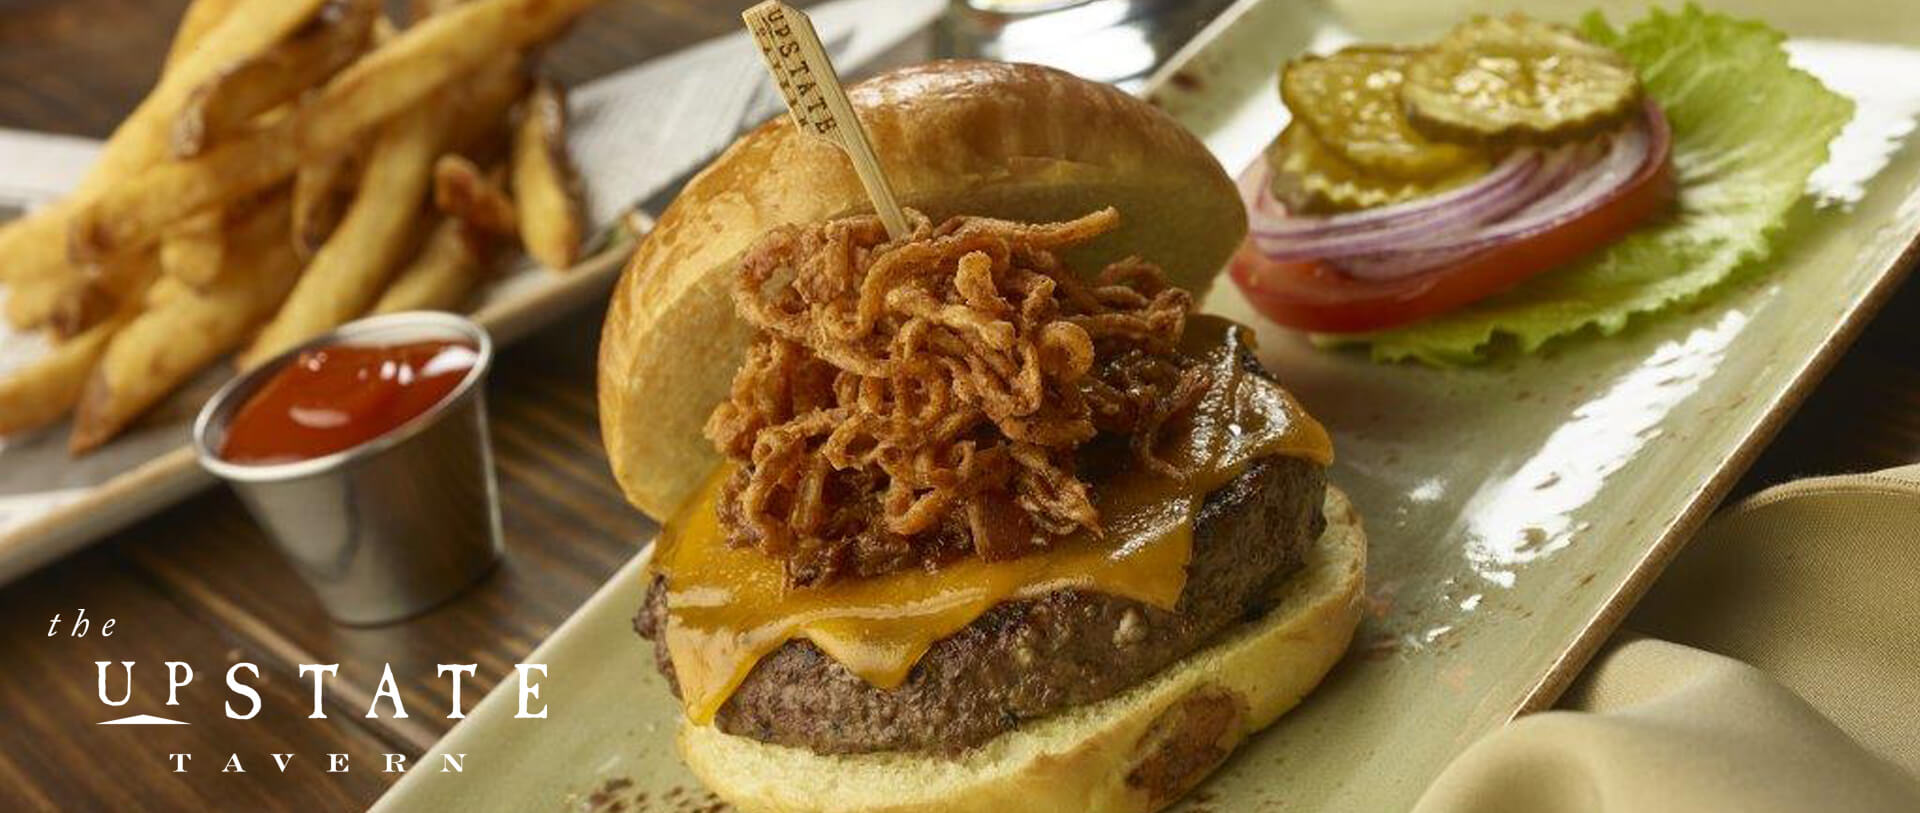 close up of a cheeseburger